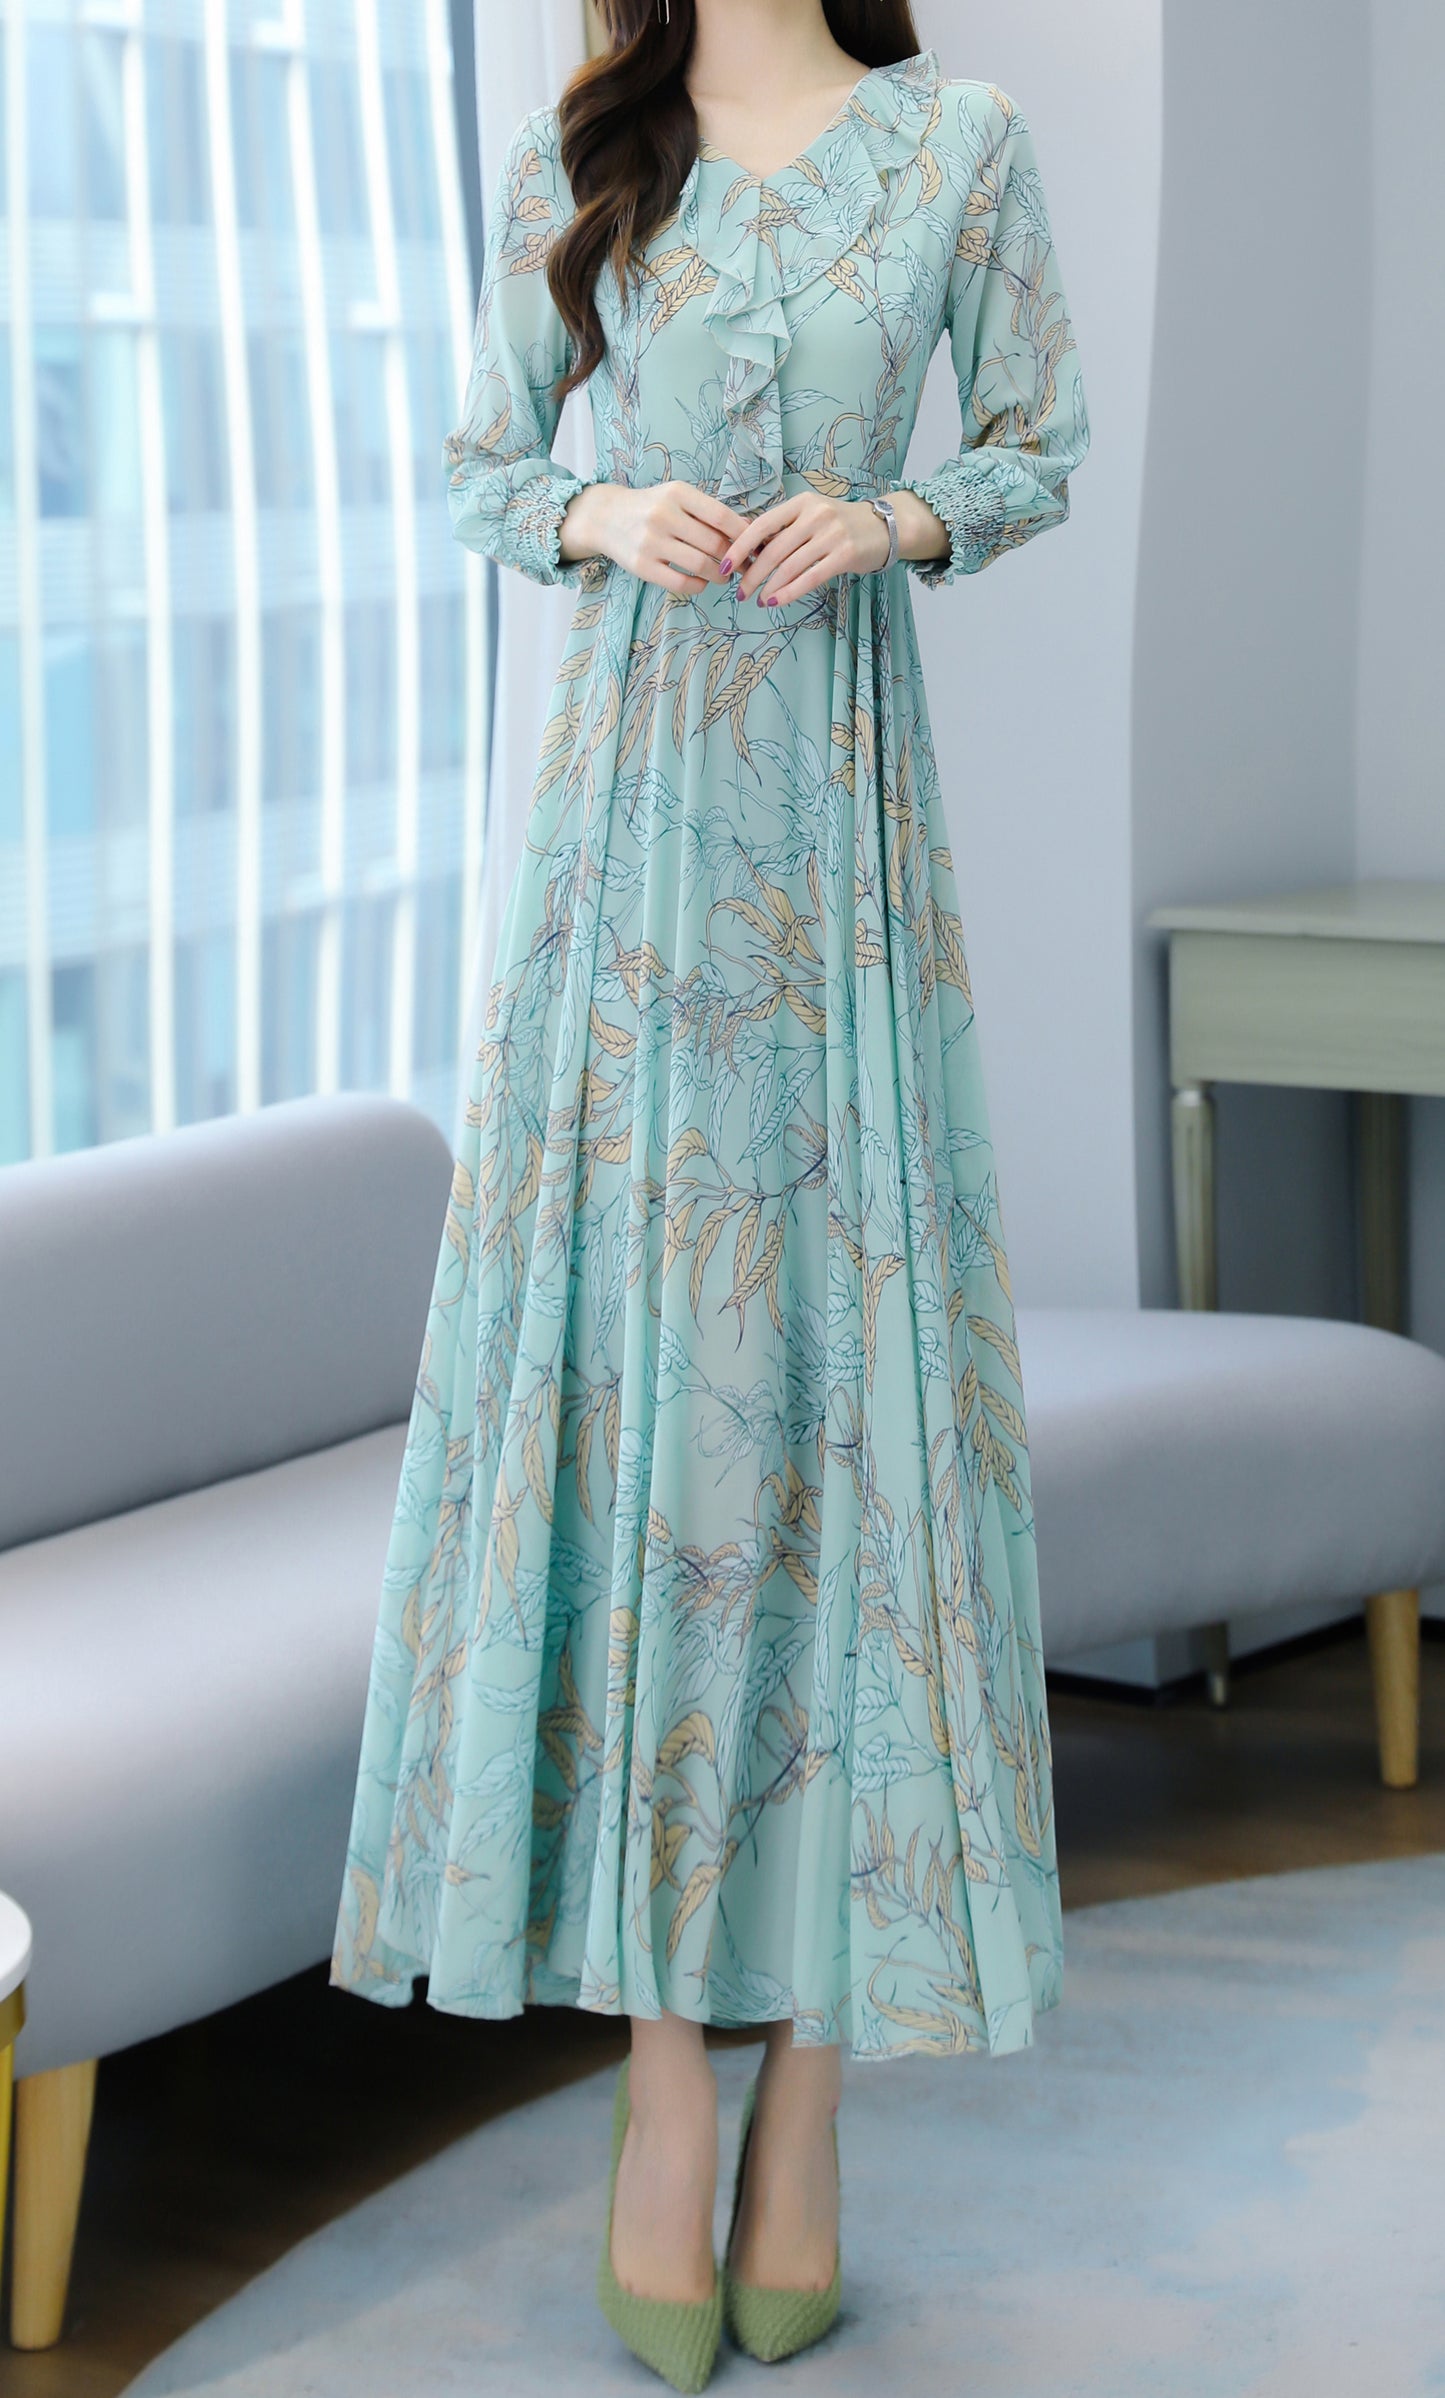 Floral Print Casual Long Sleeve V neck Elegant Maxi Dress - LAI MENG FIVE CATS